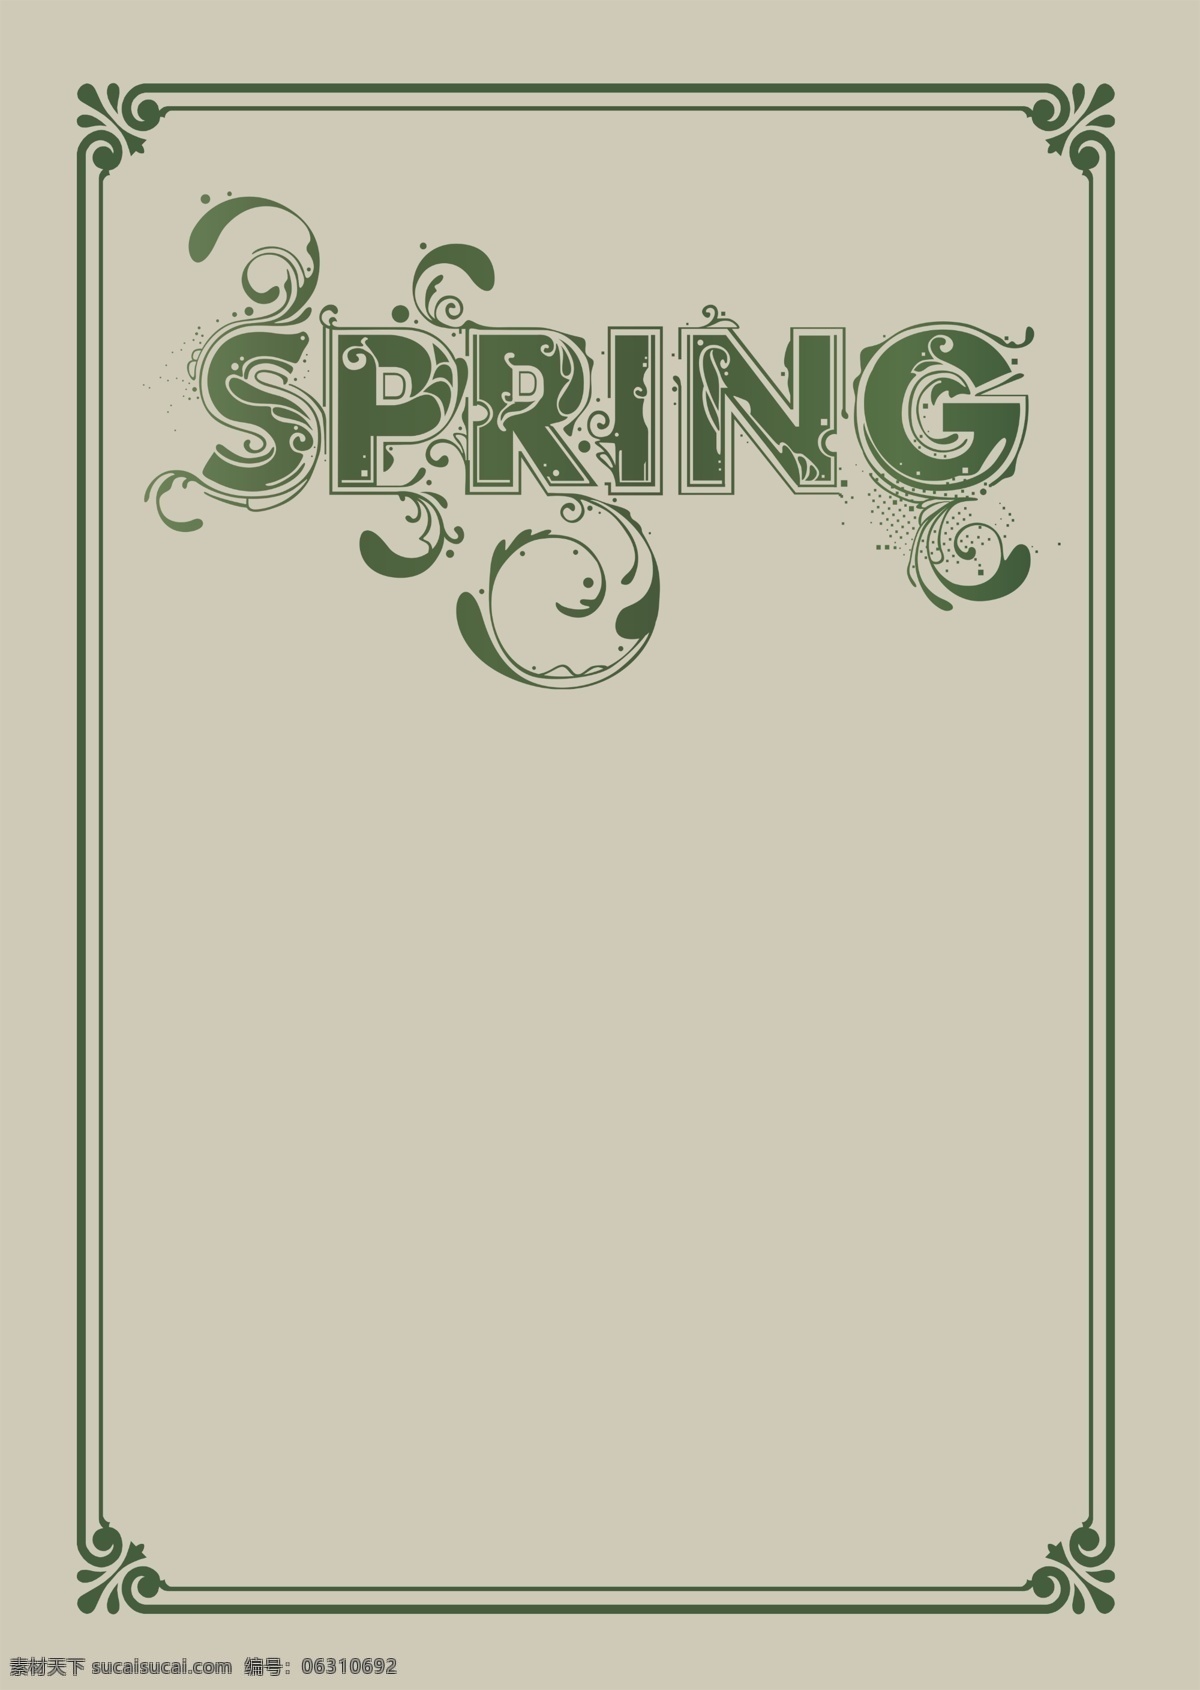 春季 spring 春季海报设计 广告设计模板 源文件 欧式线框设计 其他海报设计